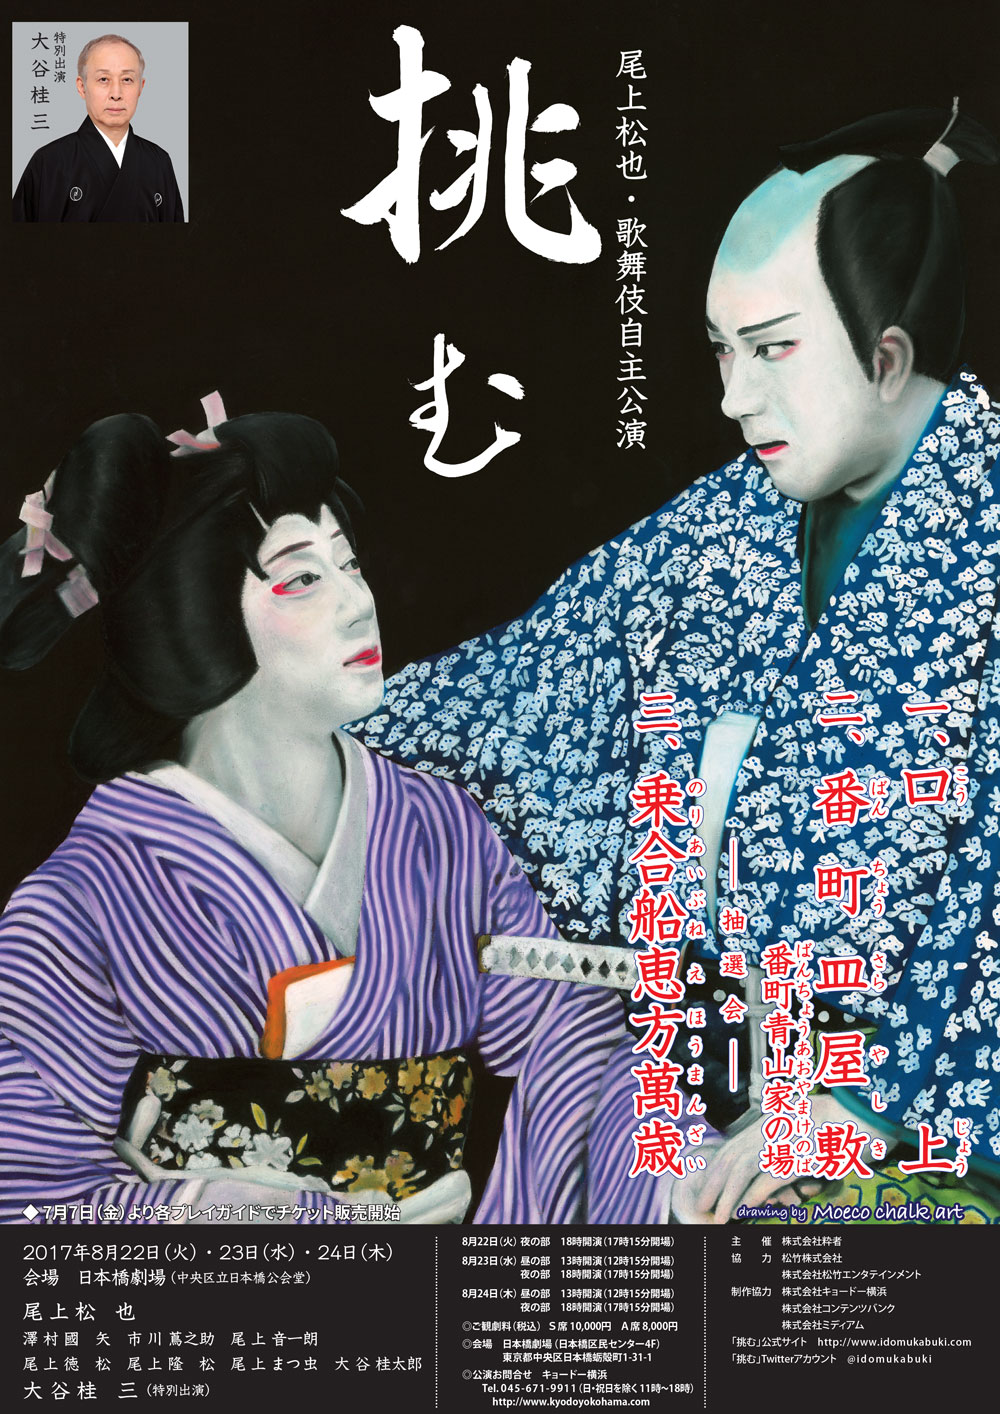 松也歌舞伎自主公演「挑む Vol.19」のお知らせ